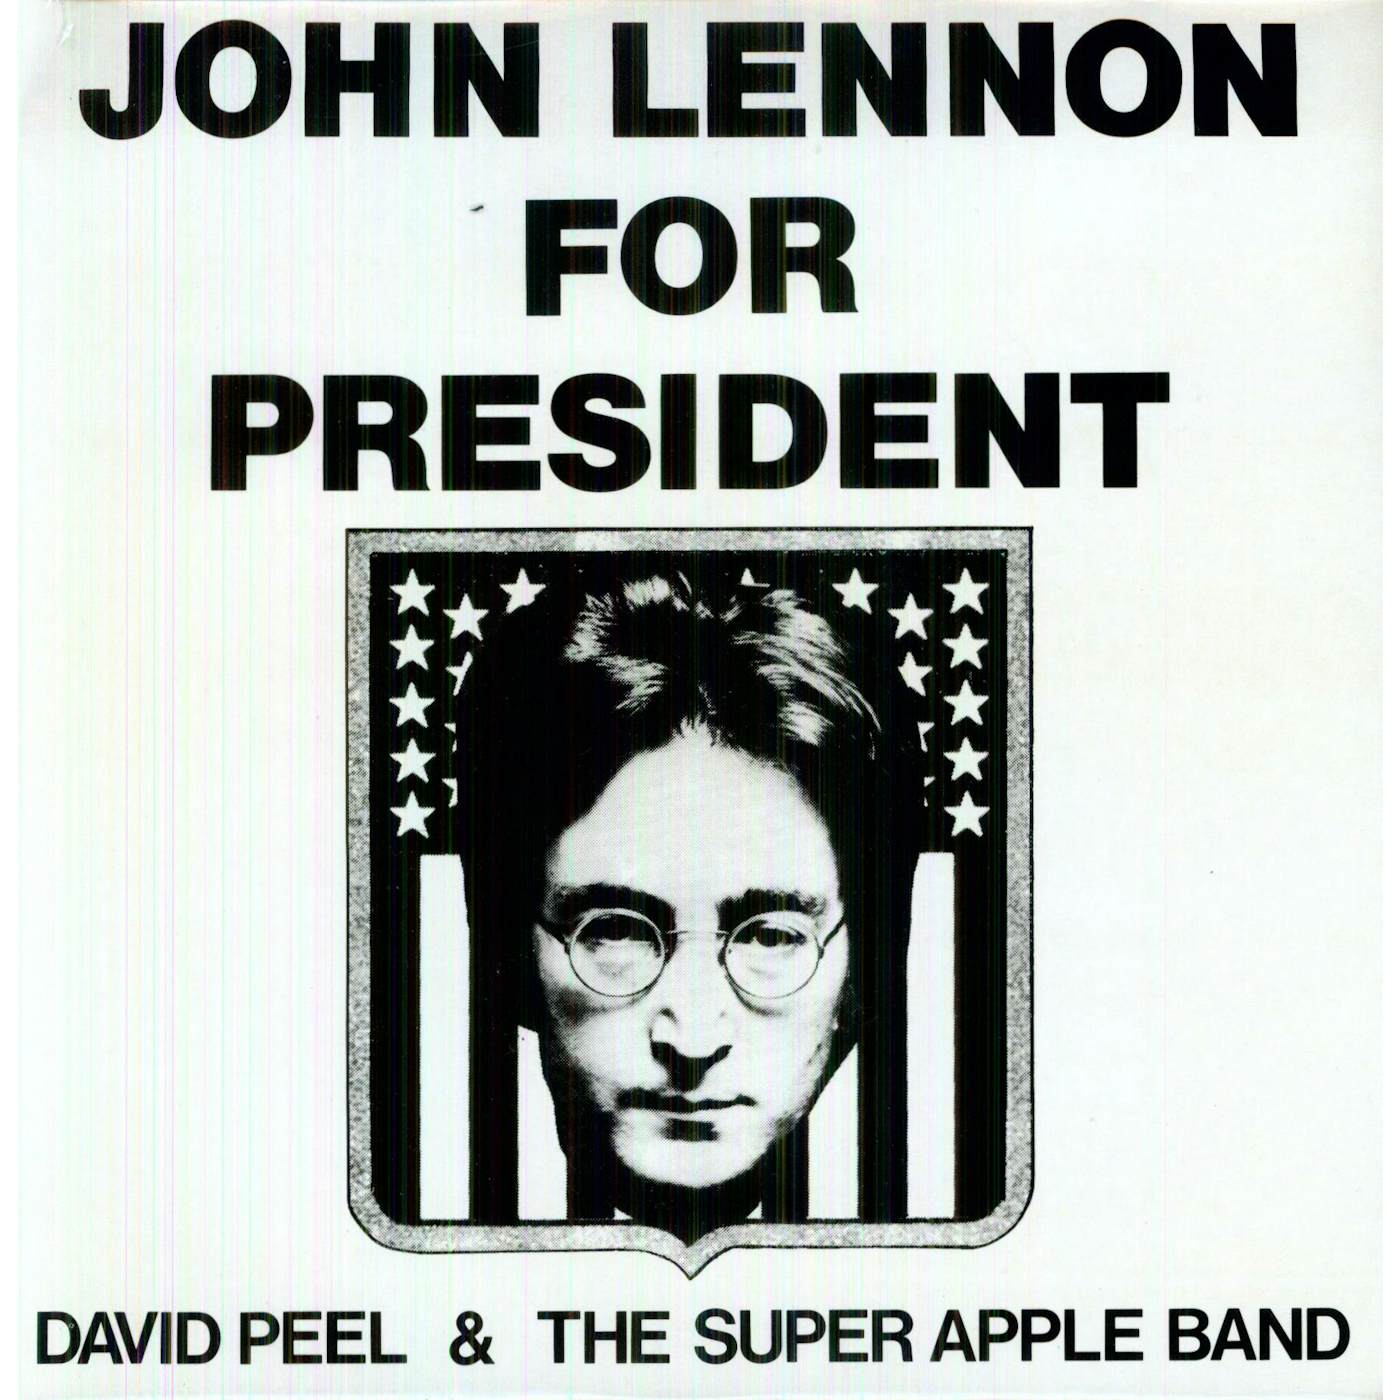 David Peel & The Super Apple Band JOHN LENNON FOR PRESIDENT Vinyl Record